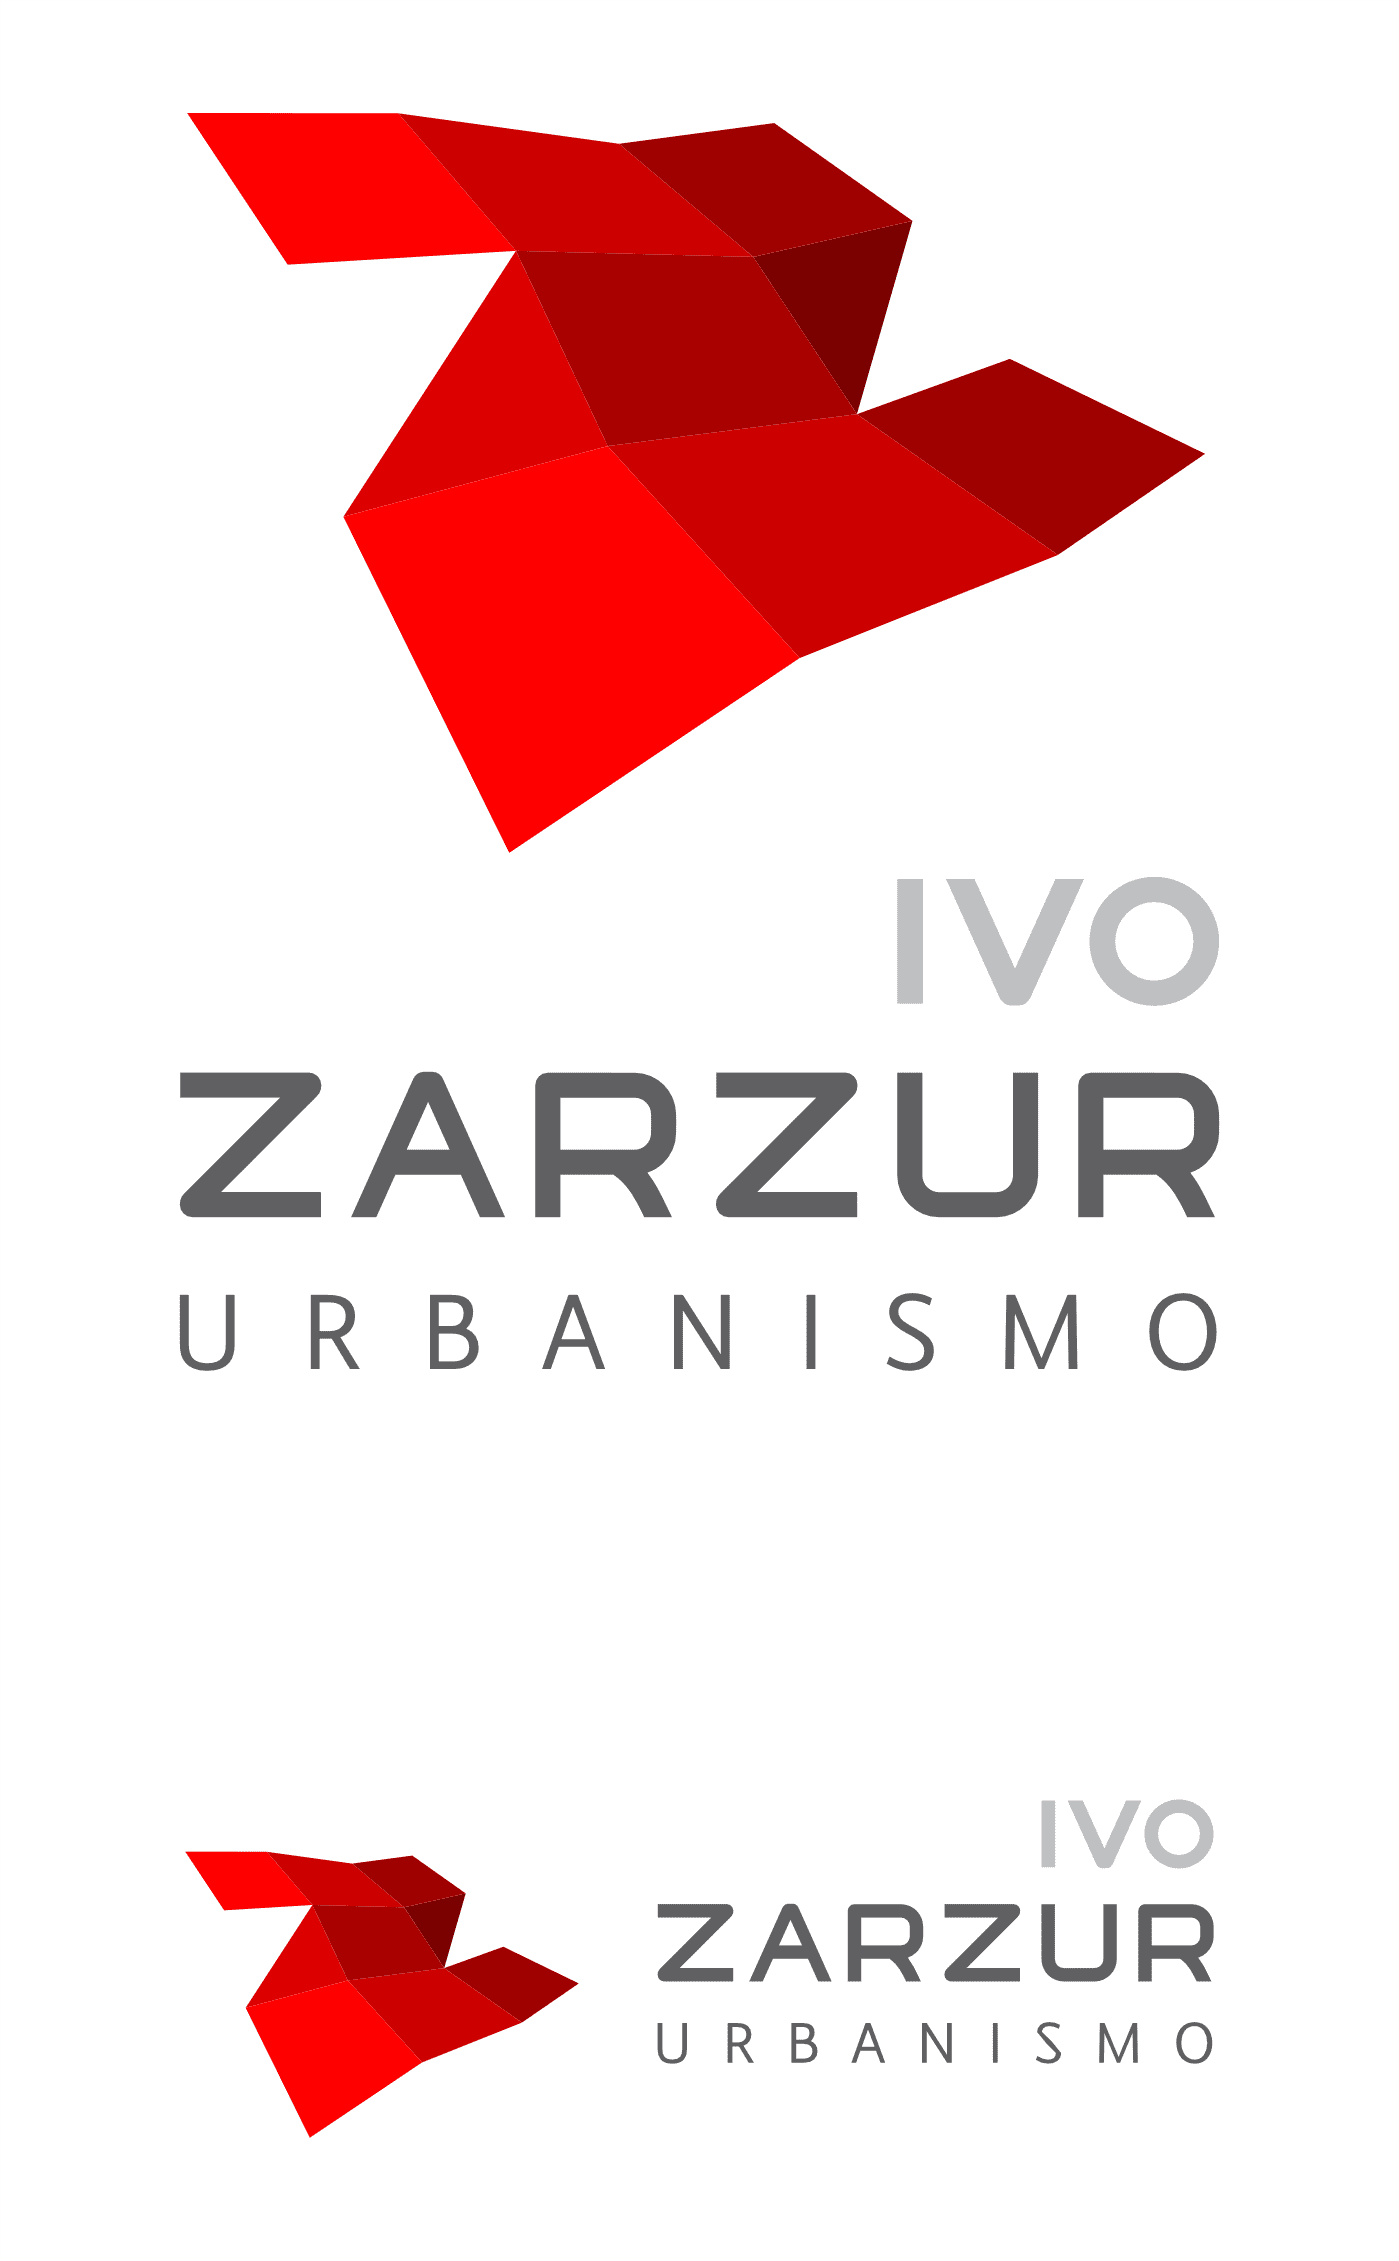 Versão vertical e horizontal da Marca Ivo Zarzur Urbanismo | Design de marca e Identidade Visual assinado pela Brandium